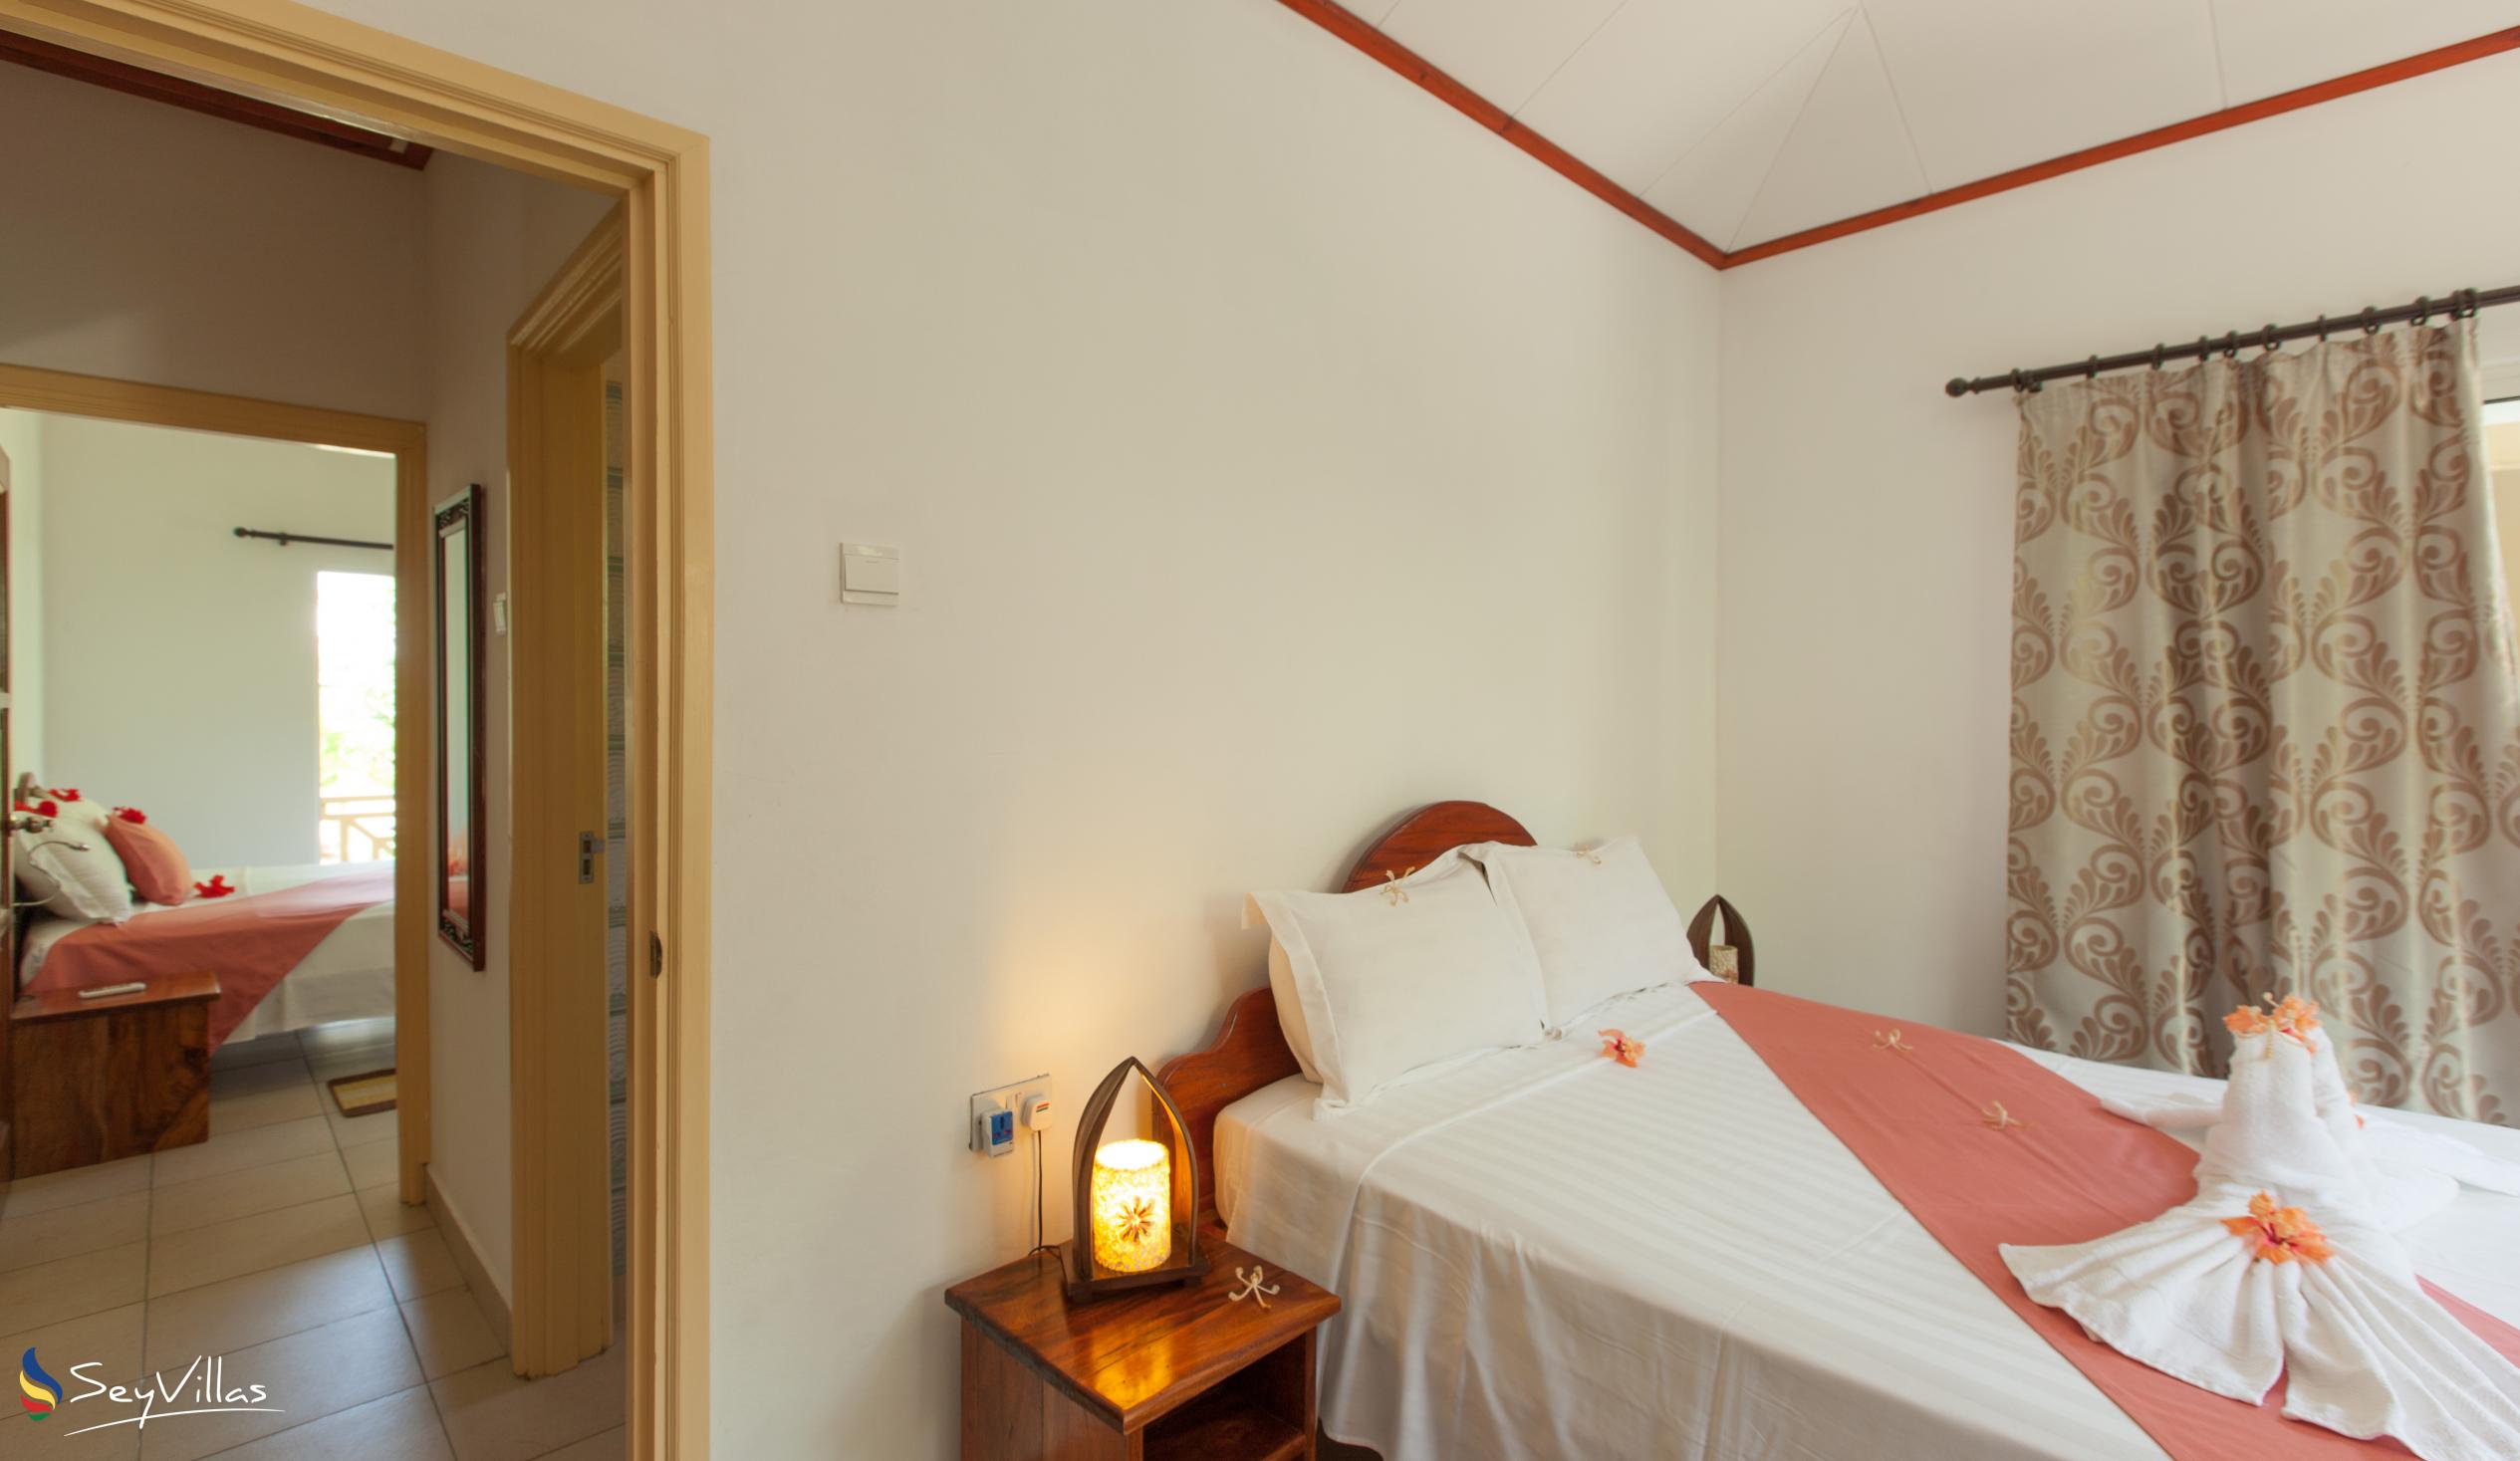 Photo 23: Hostellerie La Digue - 3-Bedroom Chalet - La Digue (Seychelles)